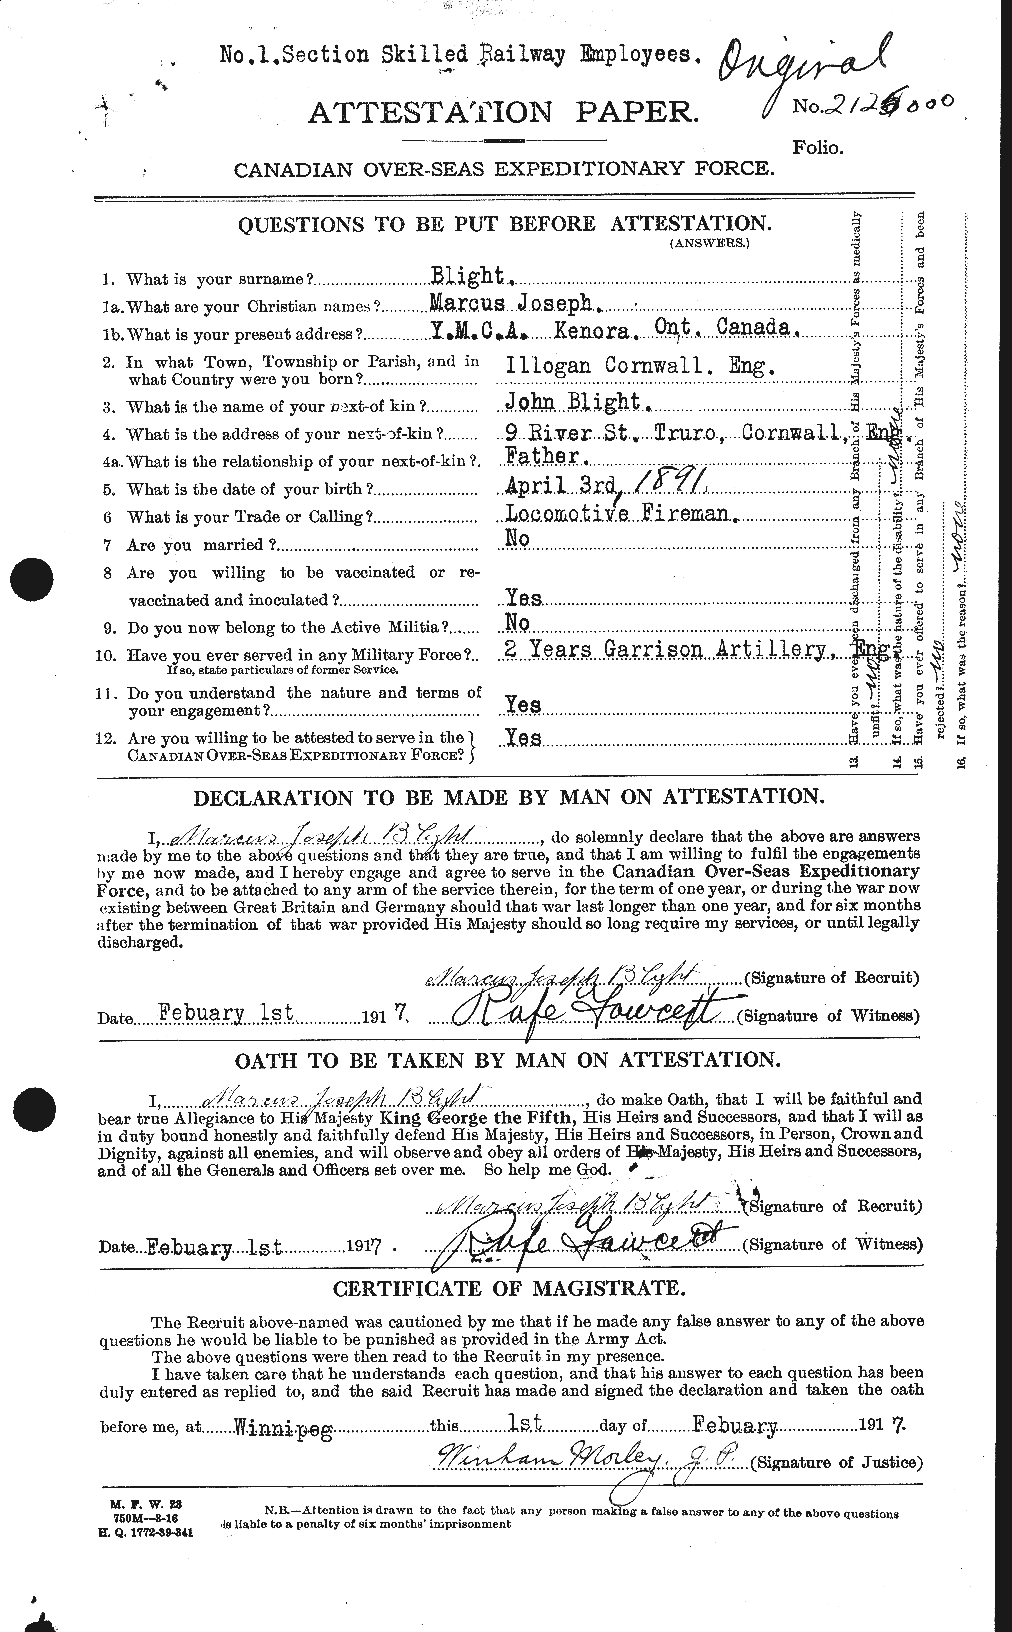 Dossiers du Personnel de la Première Guerre mondiale - CEC 248090a